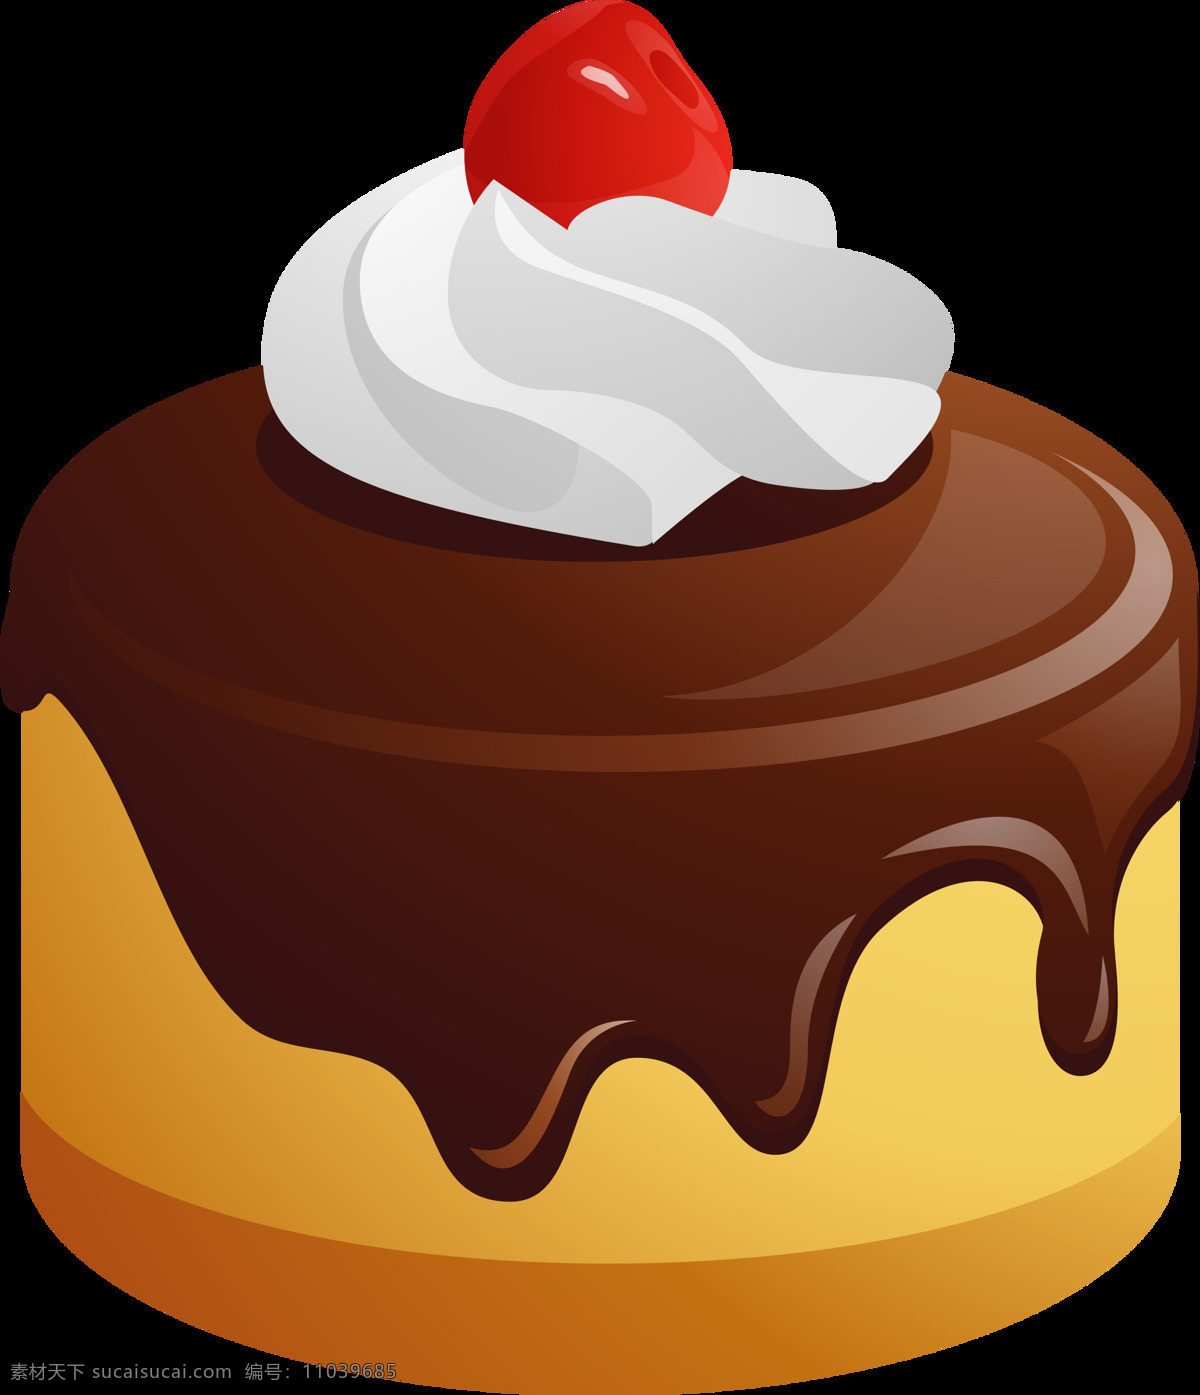 手绘 卡通 蛋糕 免 抠 透明 图 层 世界 上 最 漂亮 创意 生日蛋糕 大全 女神生日蛋糕 蛋糕图片 生日蛋糕图片 糕点图片 婚礼蛋糕 巧克力蛋糕 水果蛋糕 奶油蛋糕